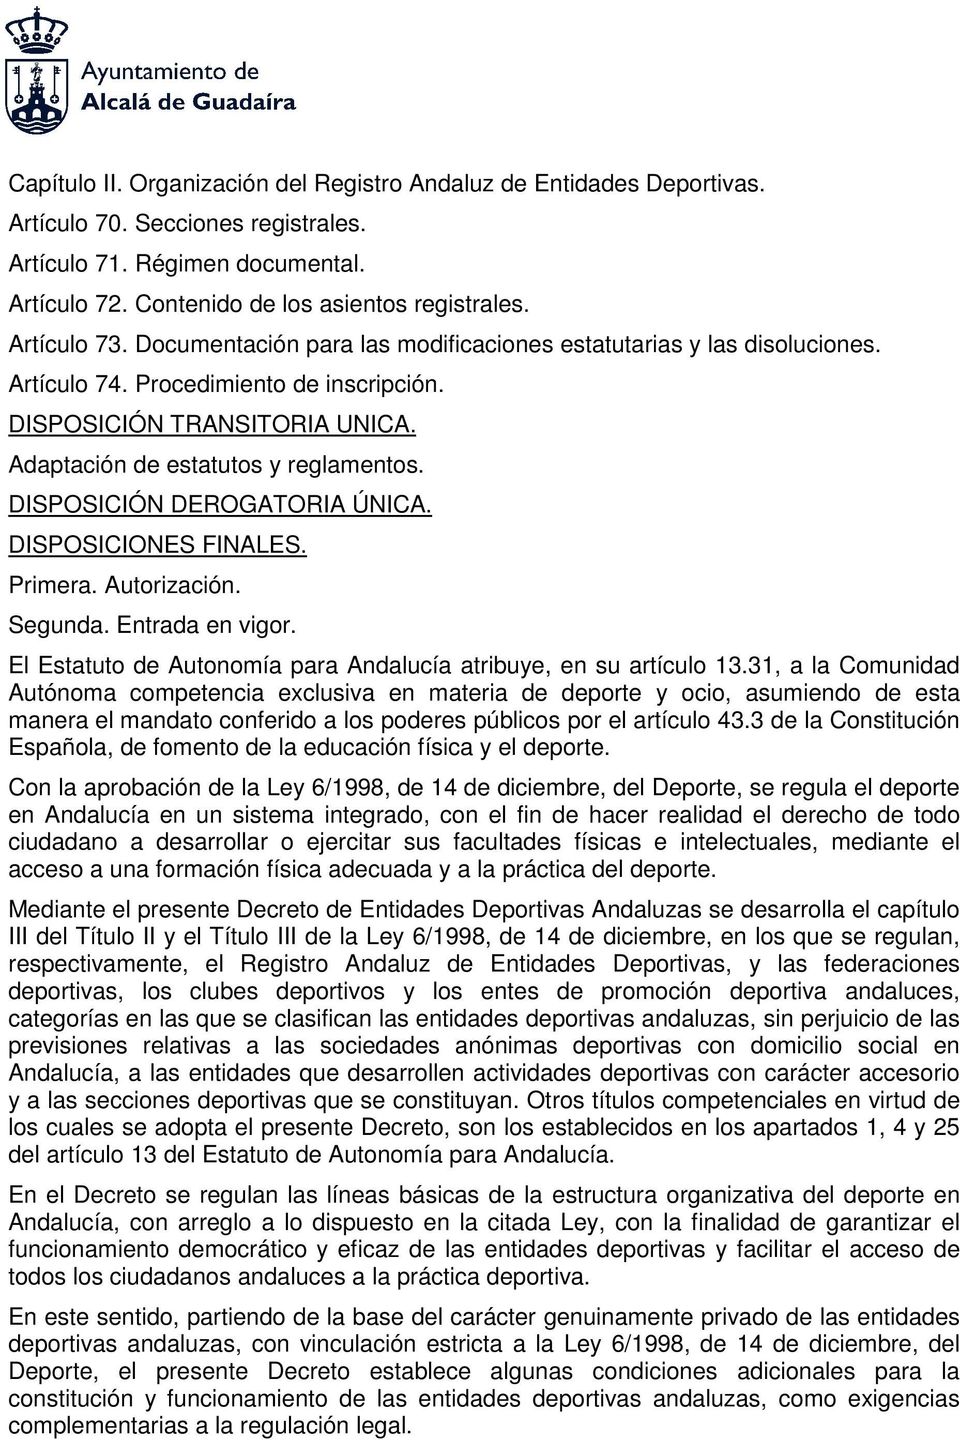 DISPOSICIÓN DEROGATORIA ÚNICA. DISPOSICIONES FINALES. Primera. Autorización. Segunda. Entrada en vigor. El Estatuto de Autonomía para Andalucía atribuye, en su artículo 13.